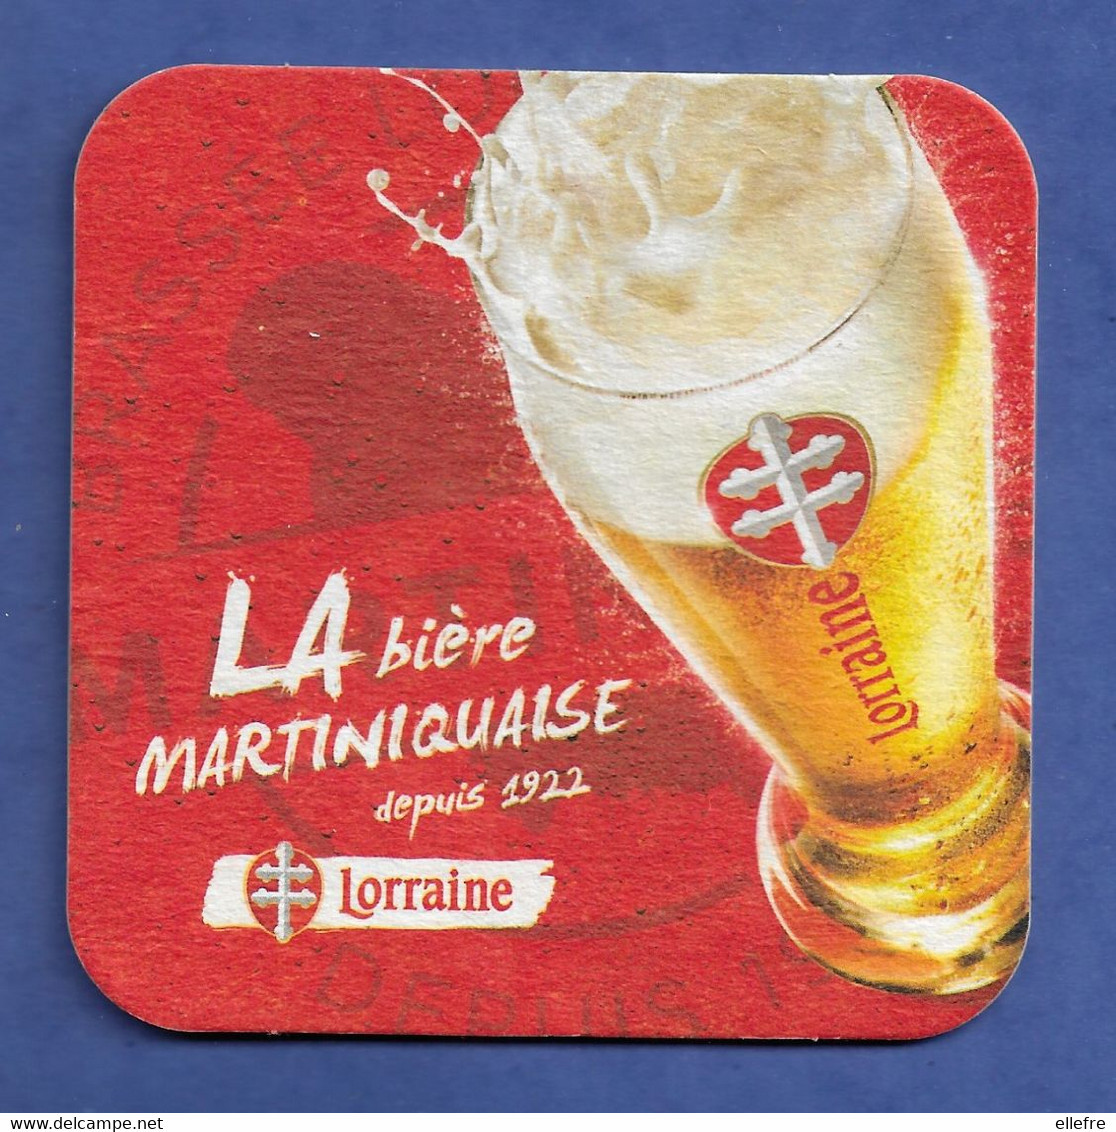 SOUS BOCK BIERE LORRAINE MARTINIQUE - Beer Mats